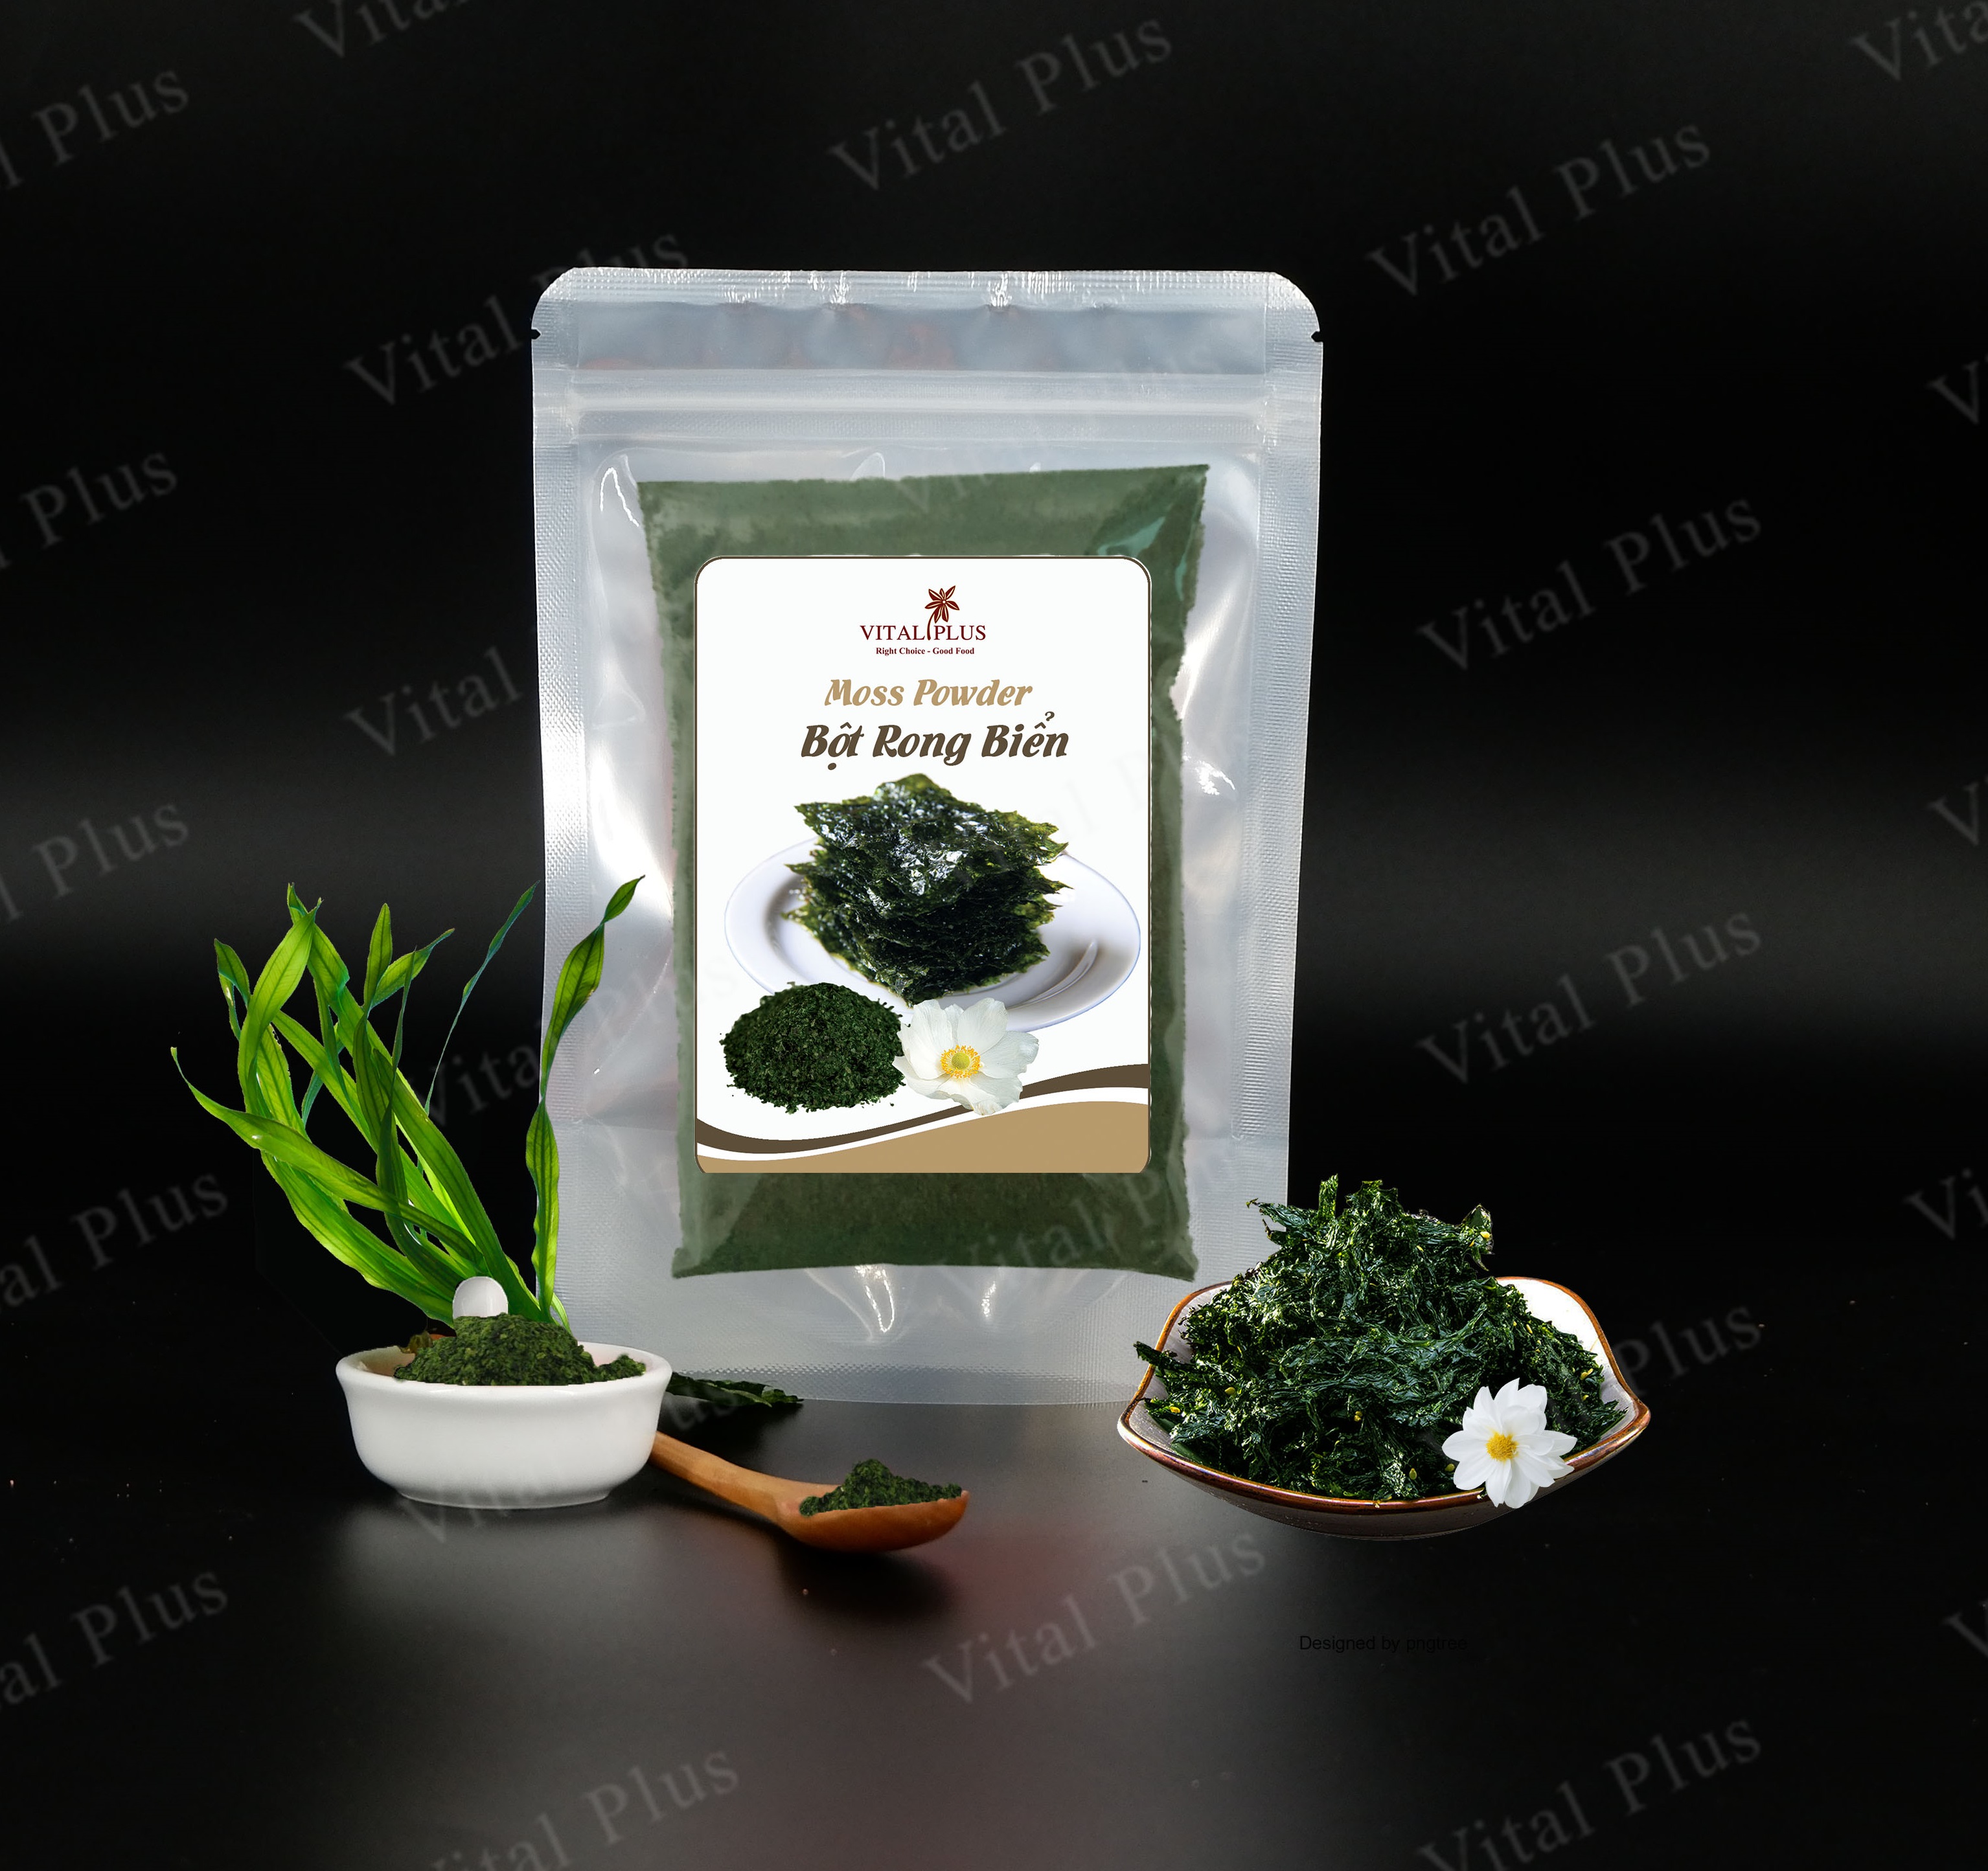 50 gram - Bột Rong Biển - Moss Powder - Shop Nhà Anise - Vital Plus